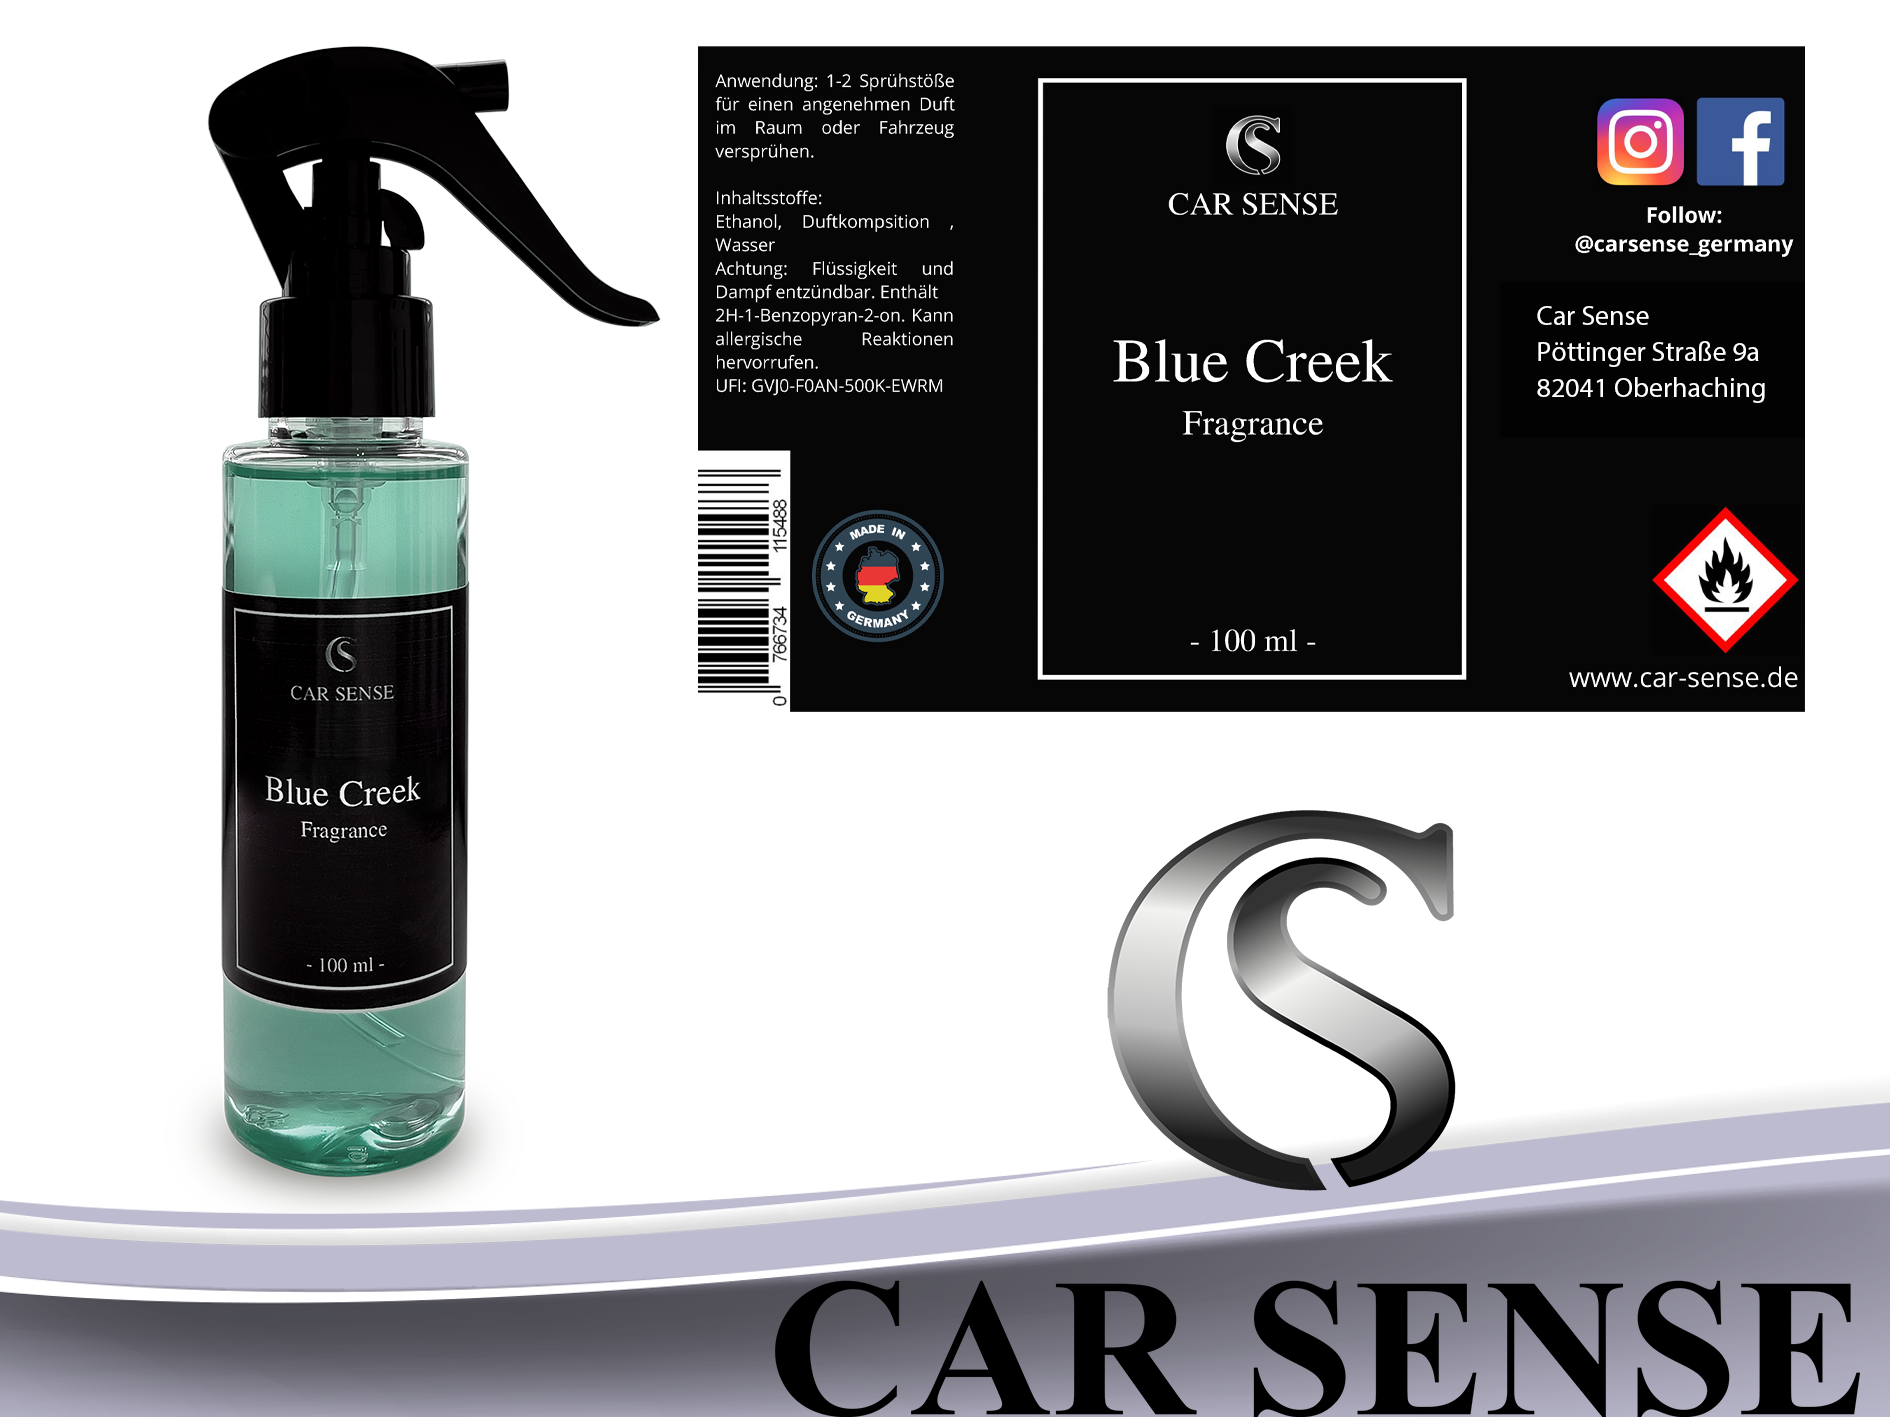 Car Sense Blue Creek Auto-parfüm 100 ml Sprühflasche der perfekte Duft für dein Fahrzeug